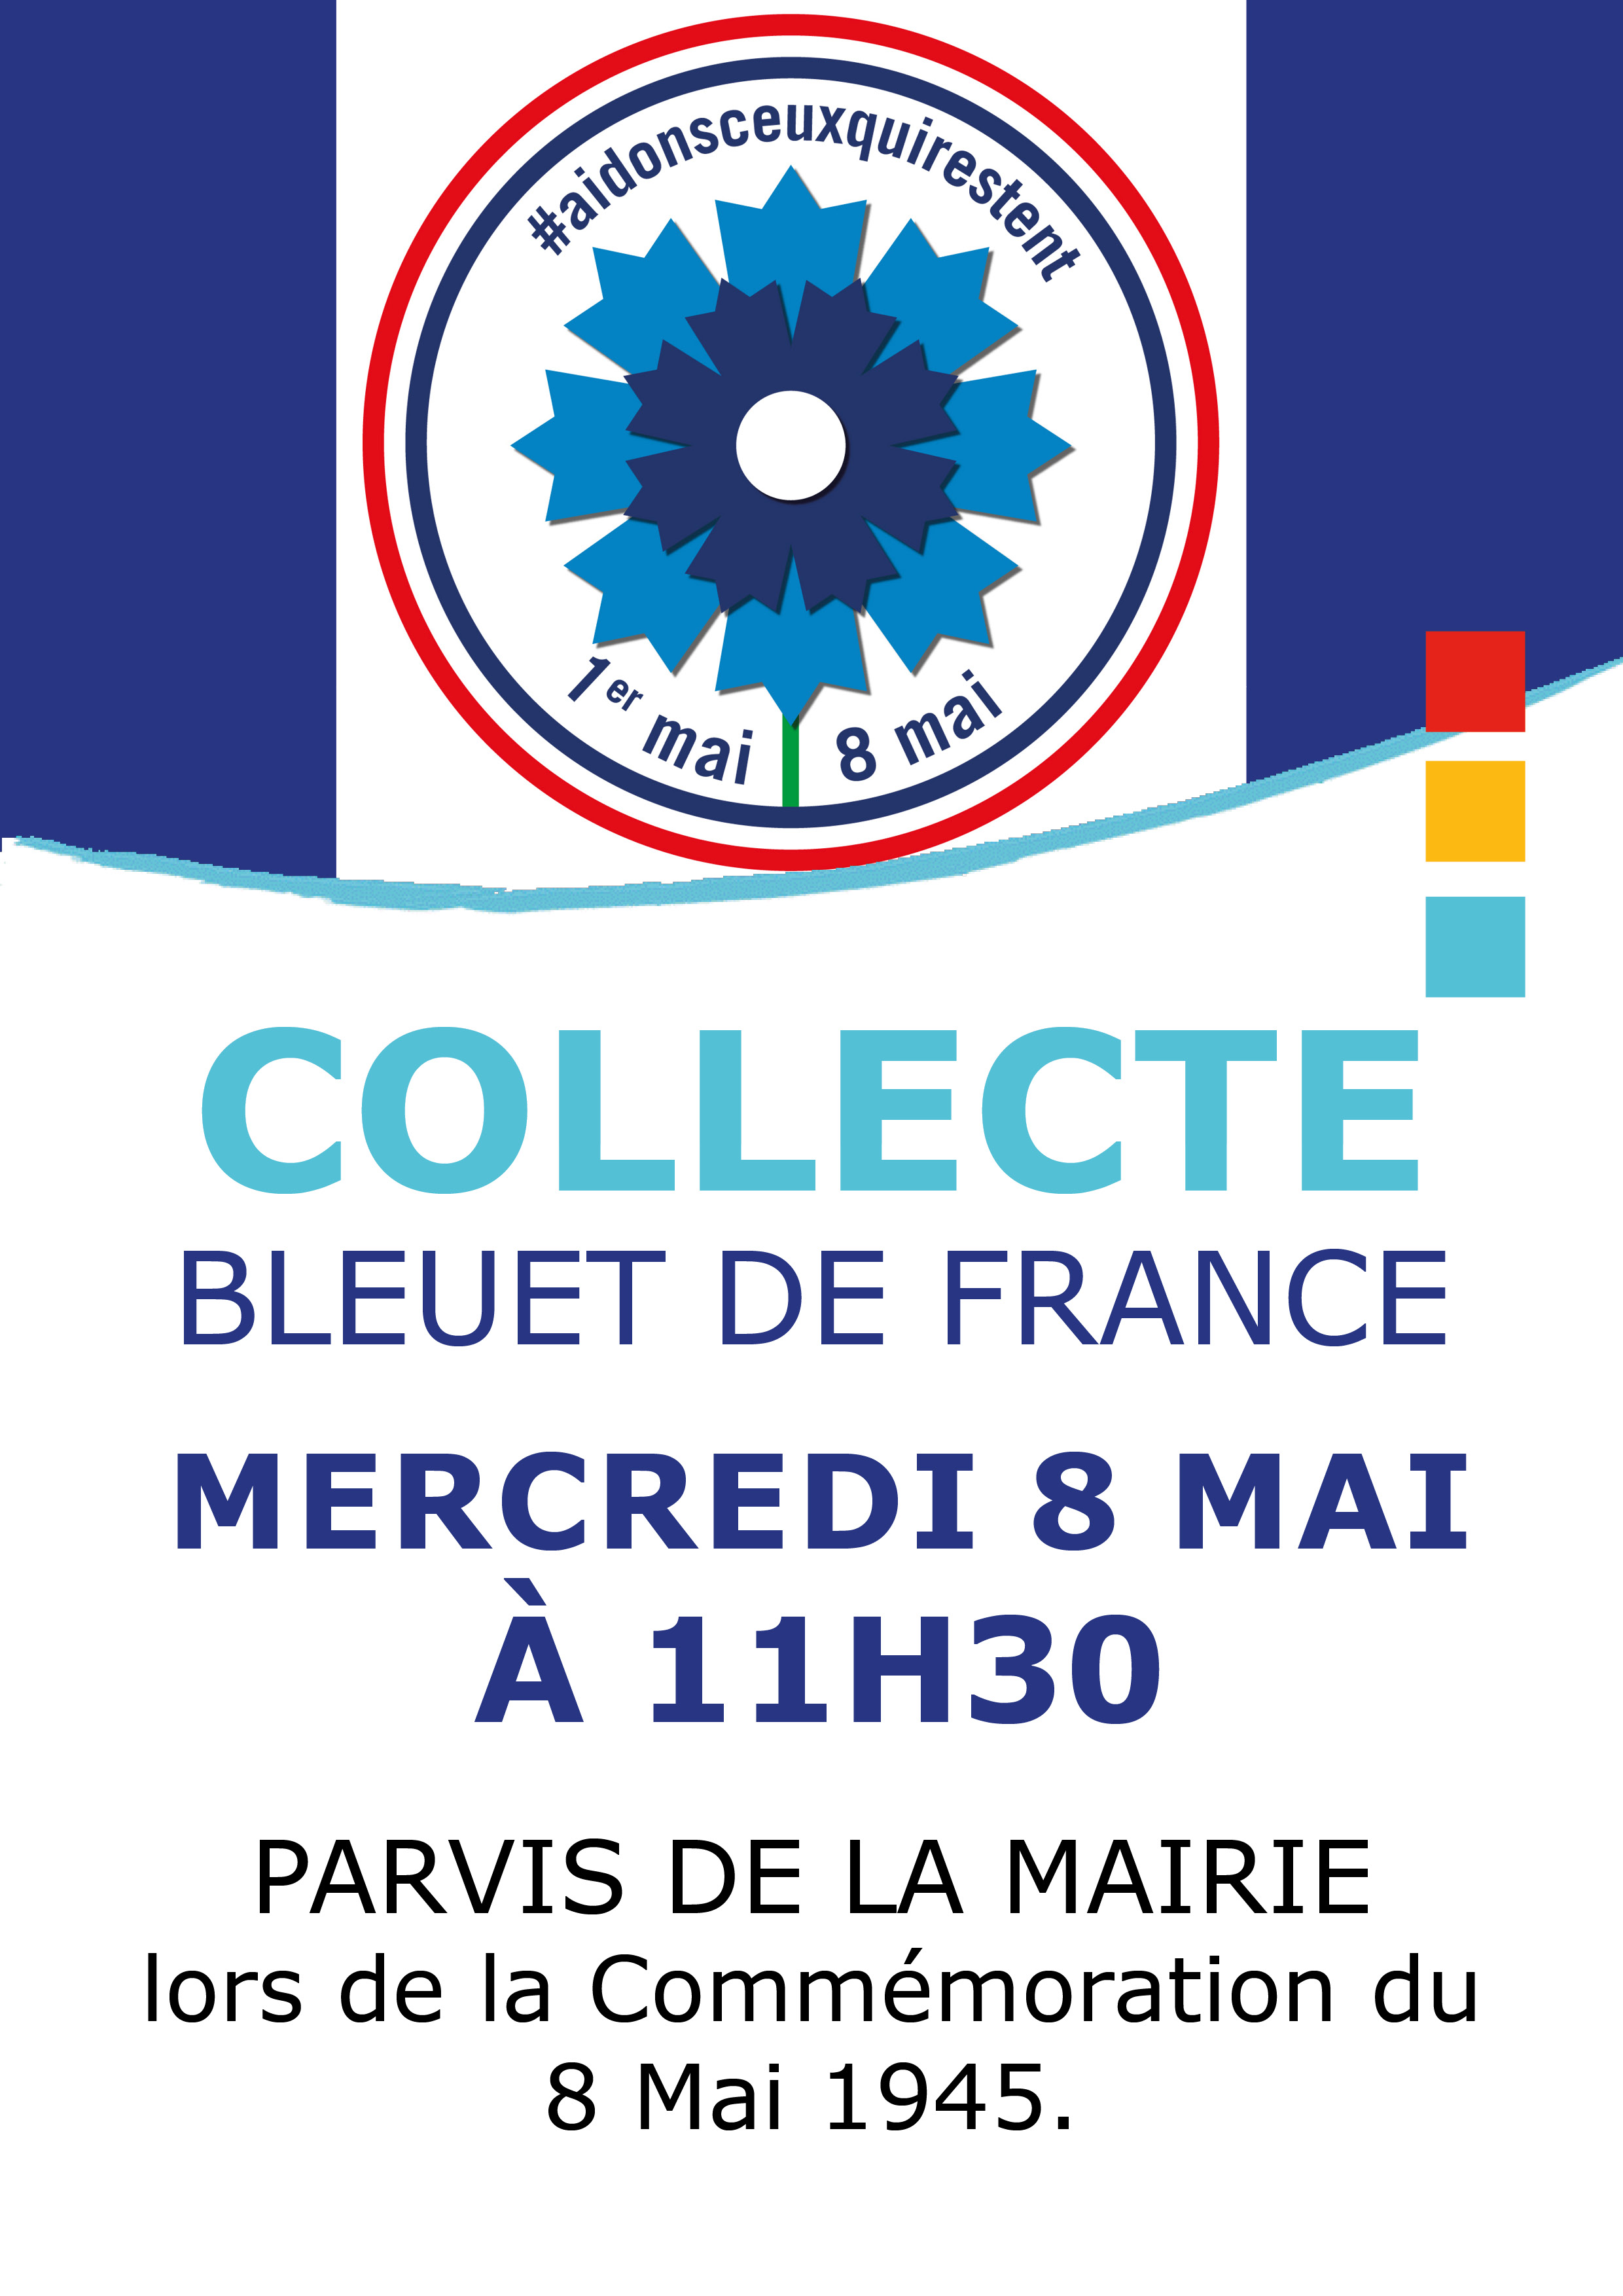 Collecte Bleuet de France